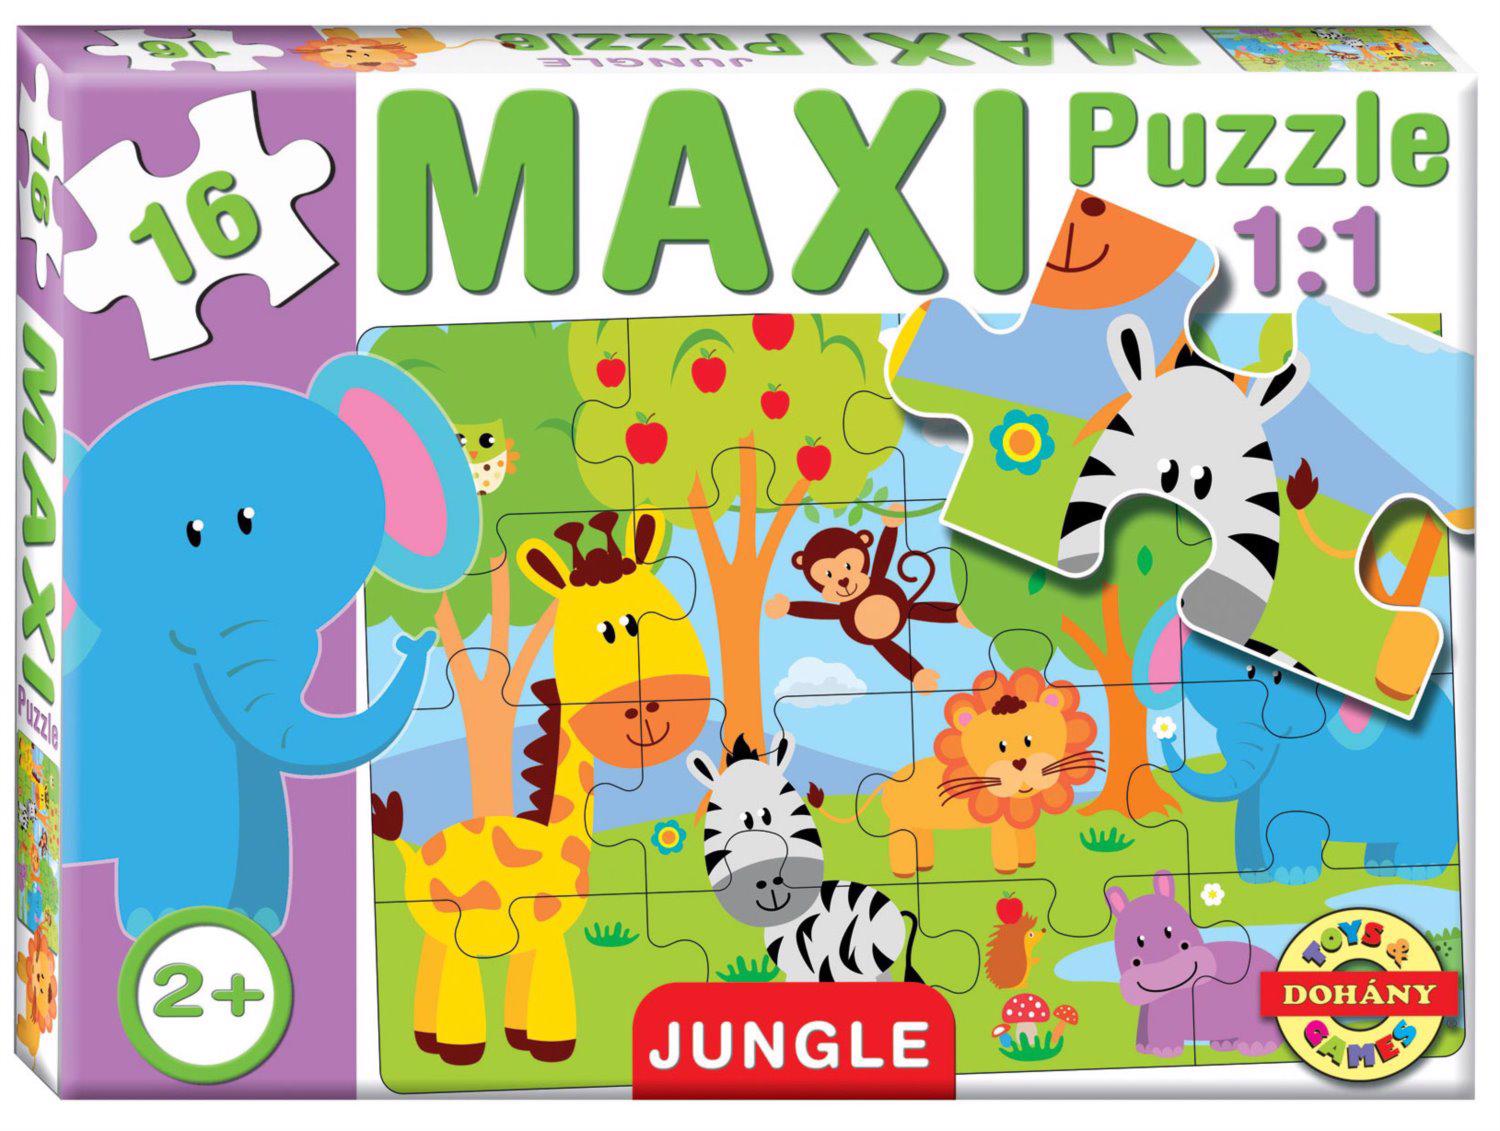 Puzzle Maxi Puzzel Jungle 16